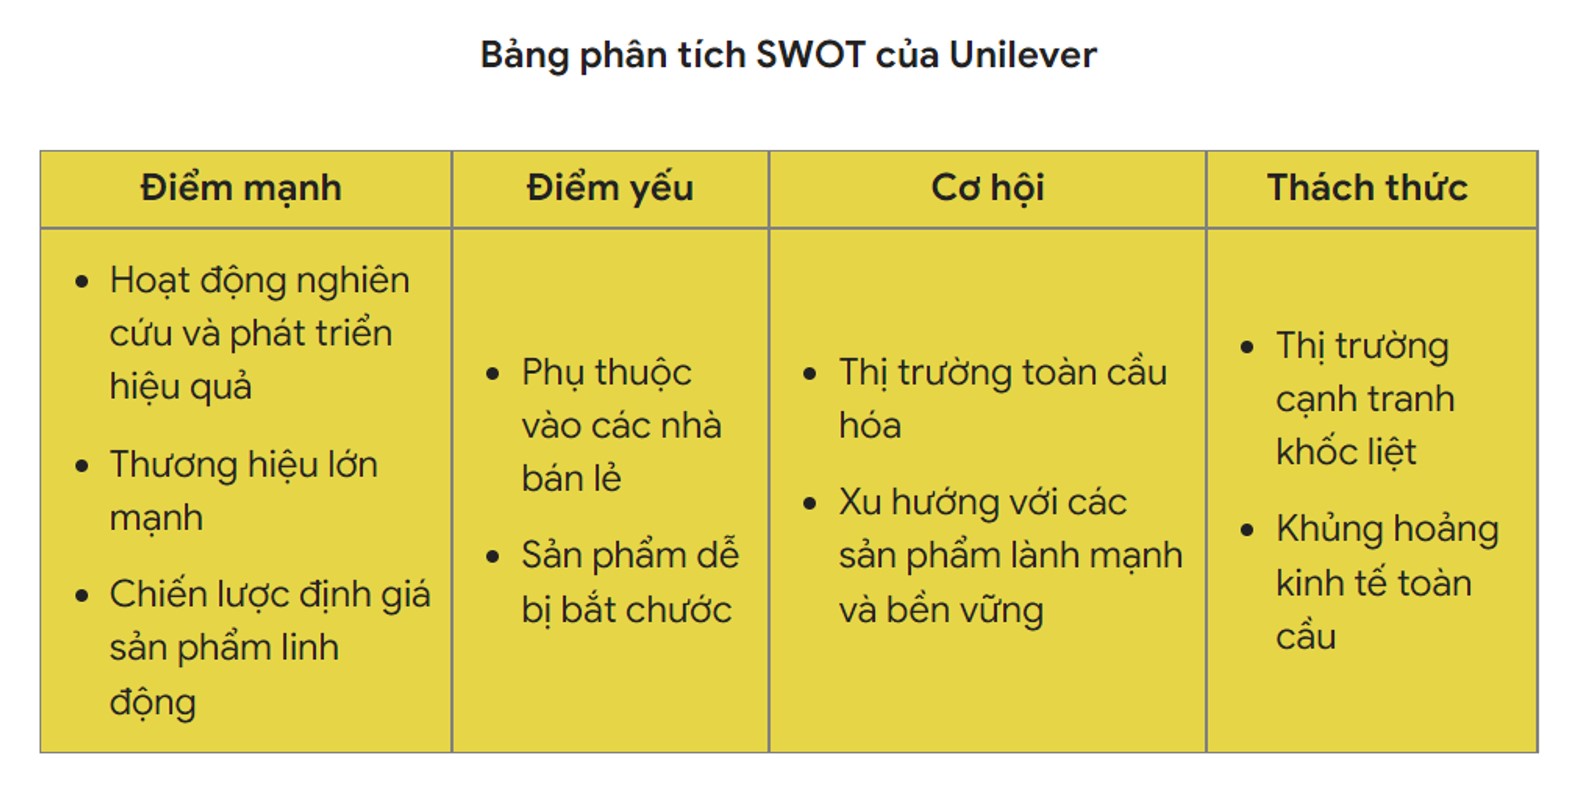 Bảng phân tích SWOT của hãng Unilever